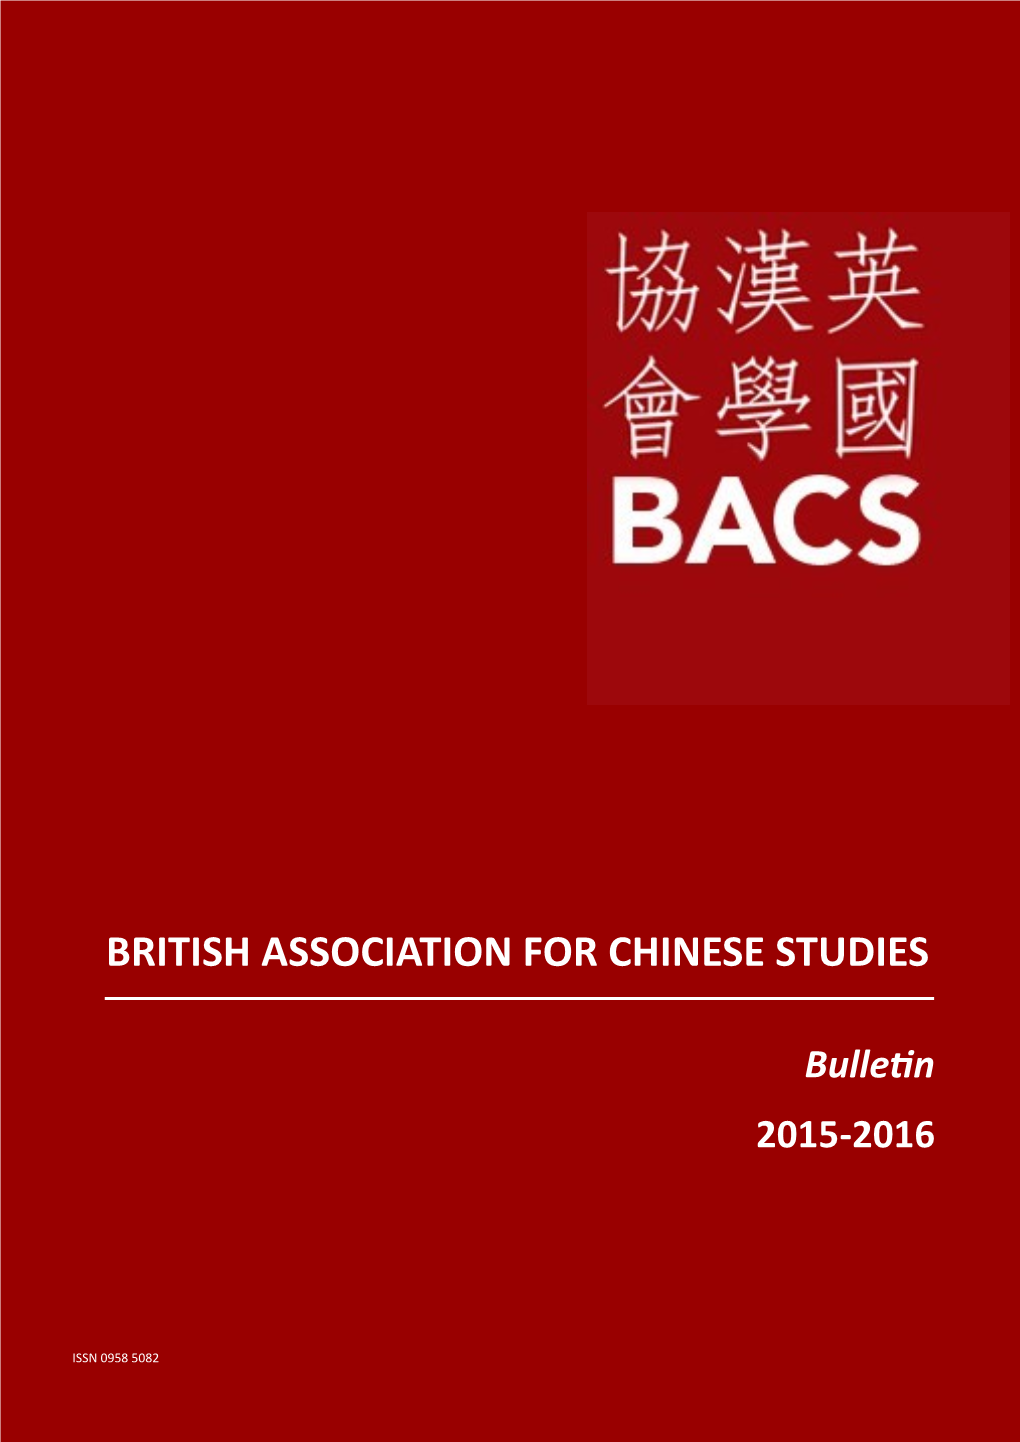 BACS Bulletin 2016